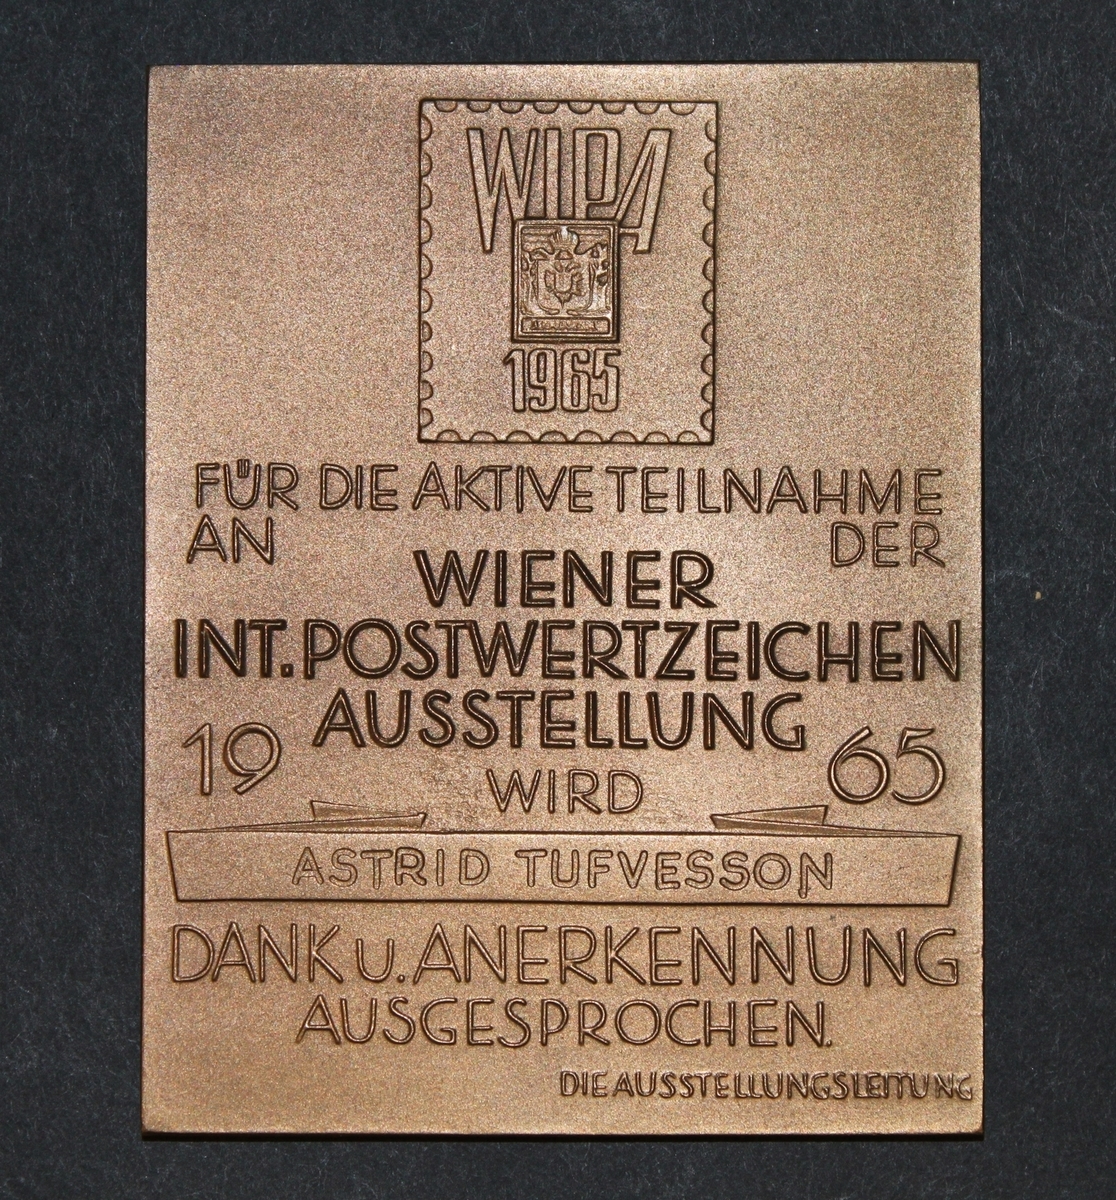 Plakett, rektangulär. Plaketten visar inom en liten ram en
bild av Österrikes första frimärke och texten: WIPA 1965, därunder
står texten: FÜR DIE AKTIVE TEILNAHME AN DER WIENER INT.
POSTWETZEICHEN AUSSTELLUNG 1965 WIRD ASTRID TUFVESSON DANK U.
ANERKENNUNG AUSGESPROCHEN DIE AUSSTELLUNGSLEITUNG.